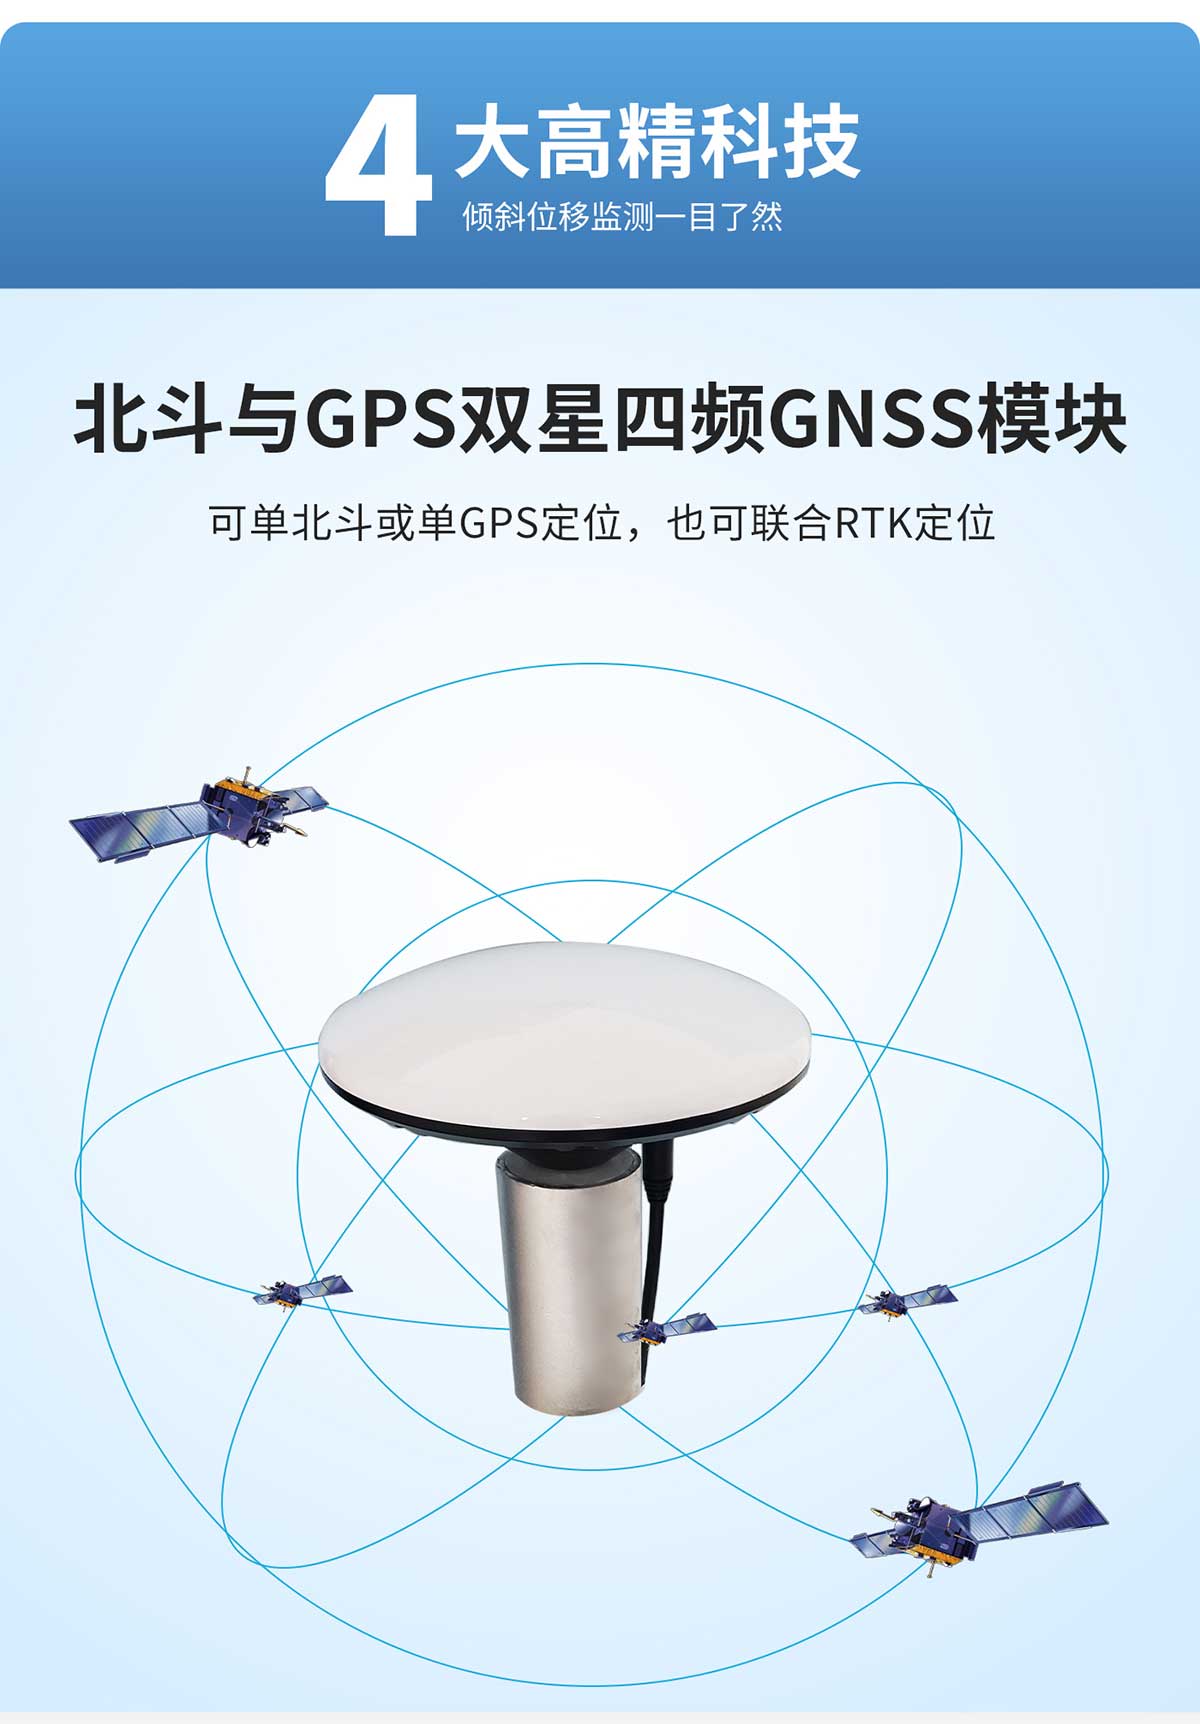 GNSS位移监测系统设备